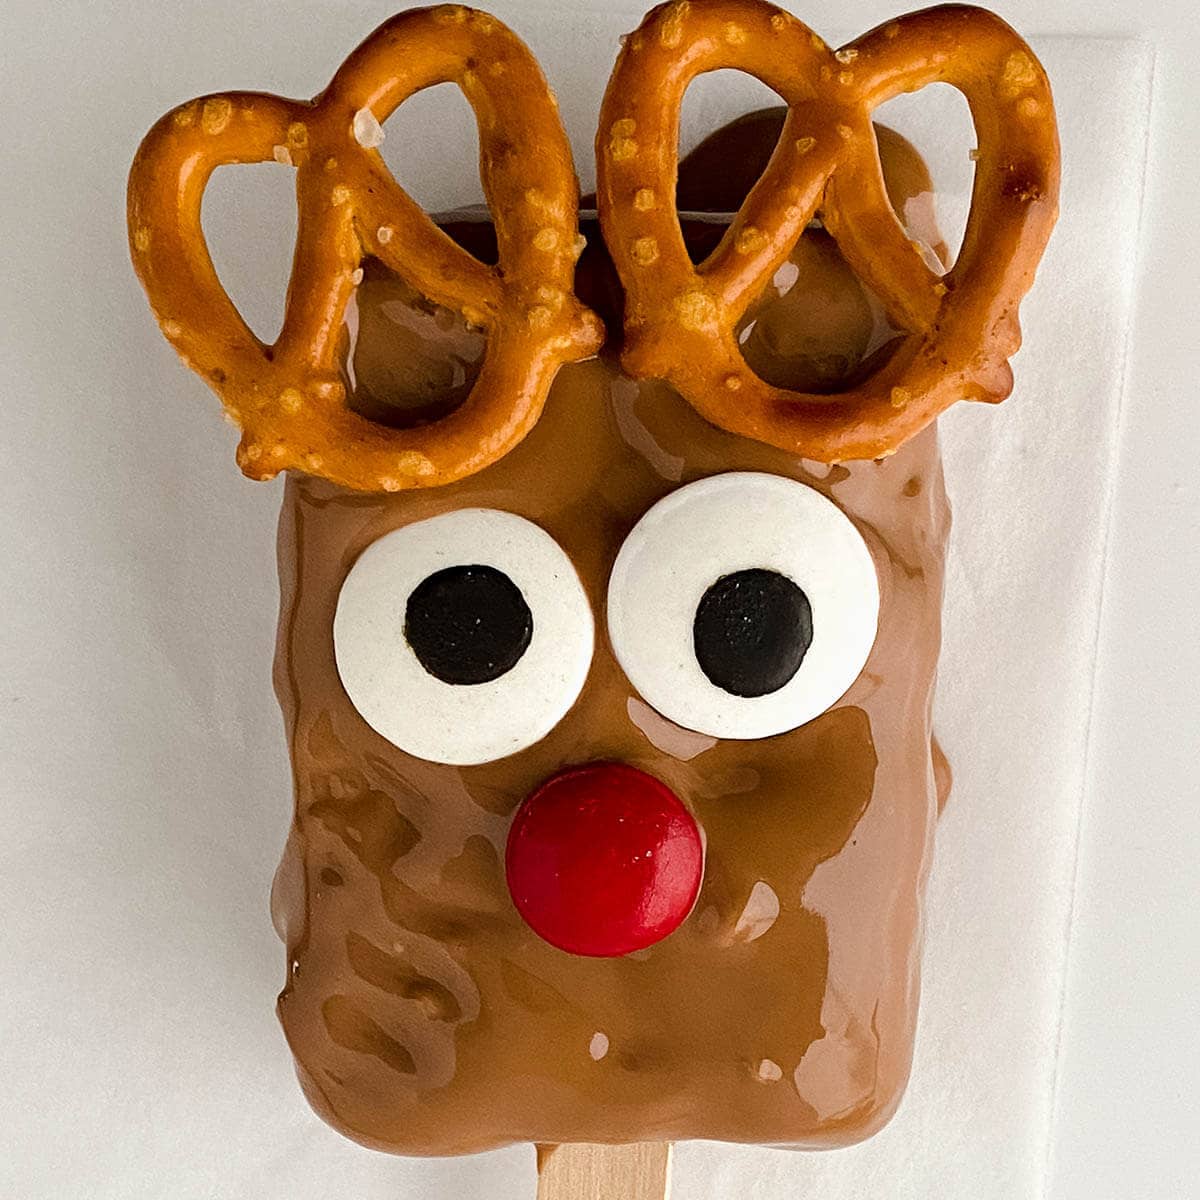 Reindeer Rice Krispie Treat with pretzel horns.